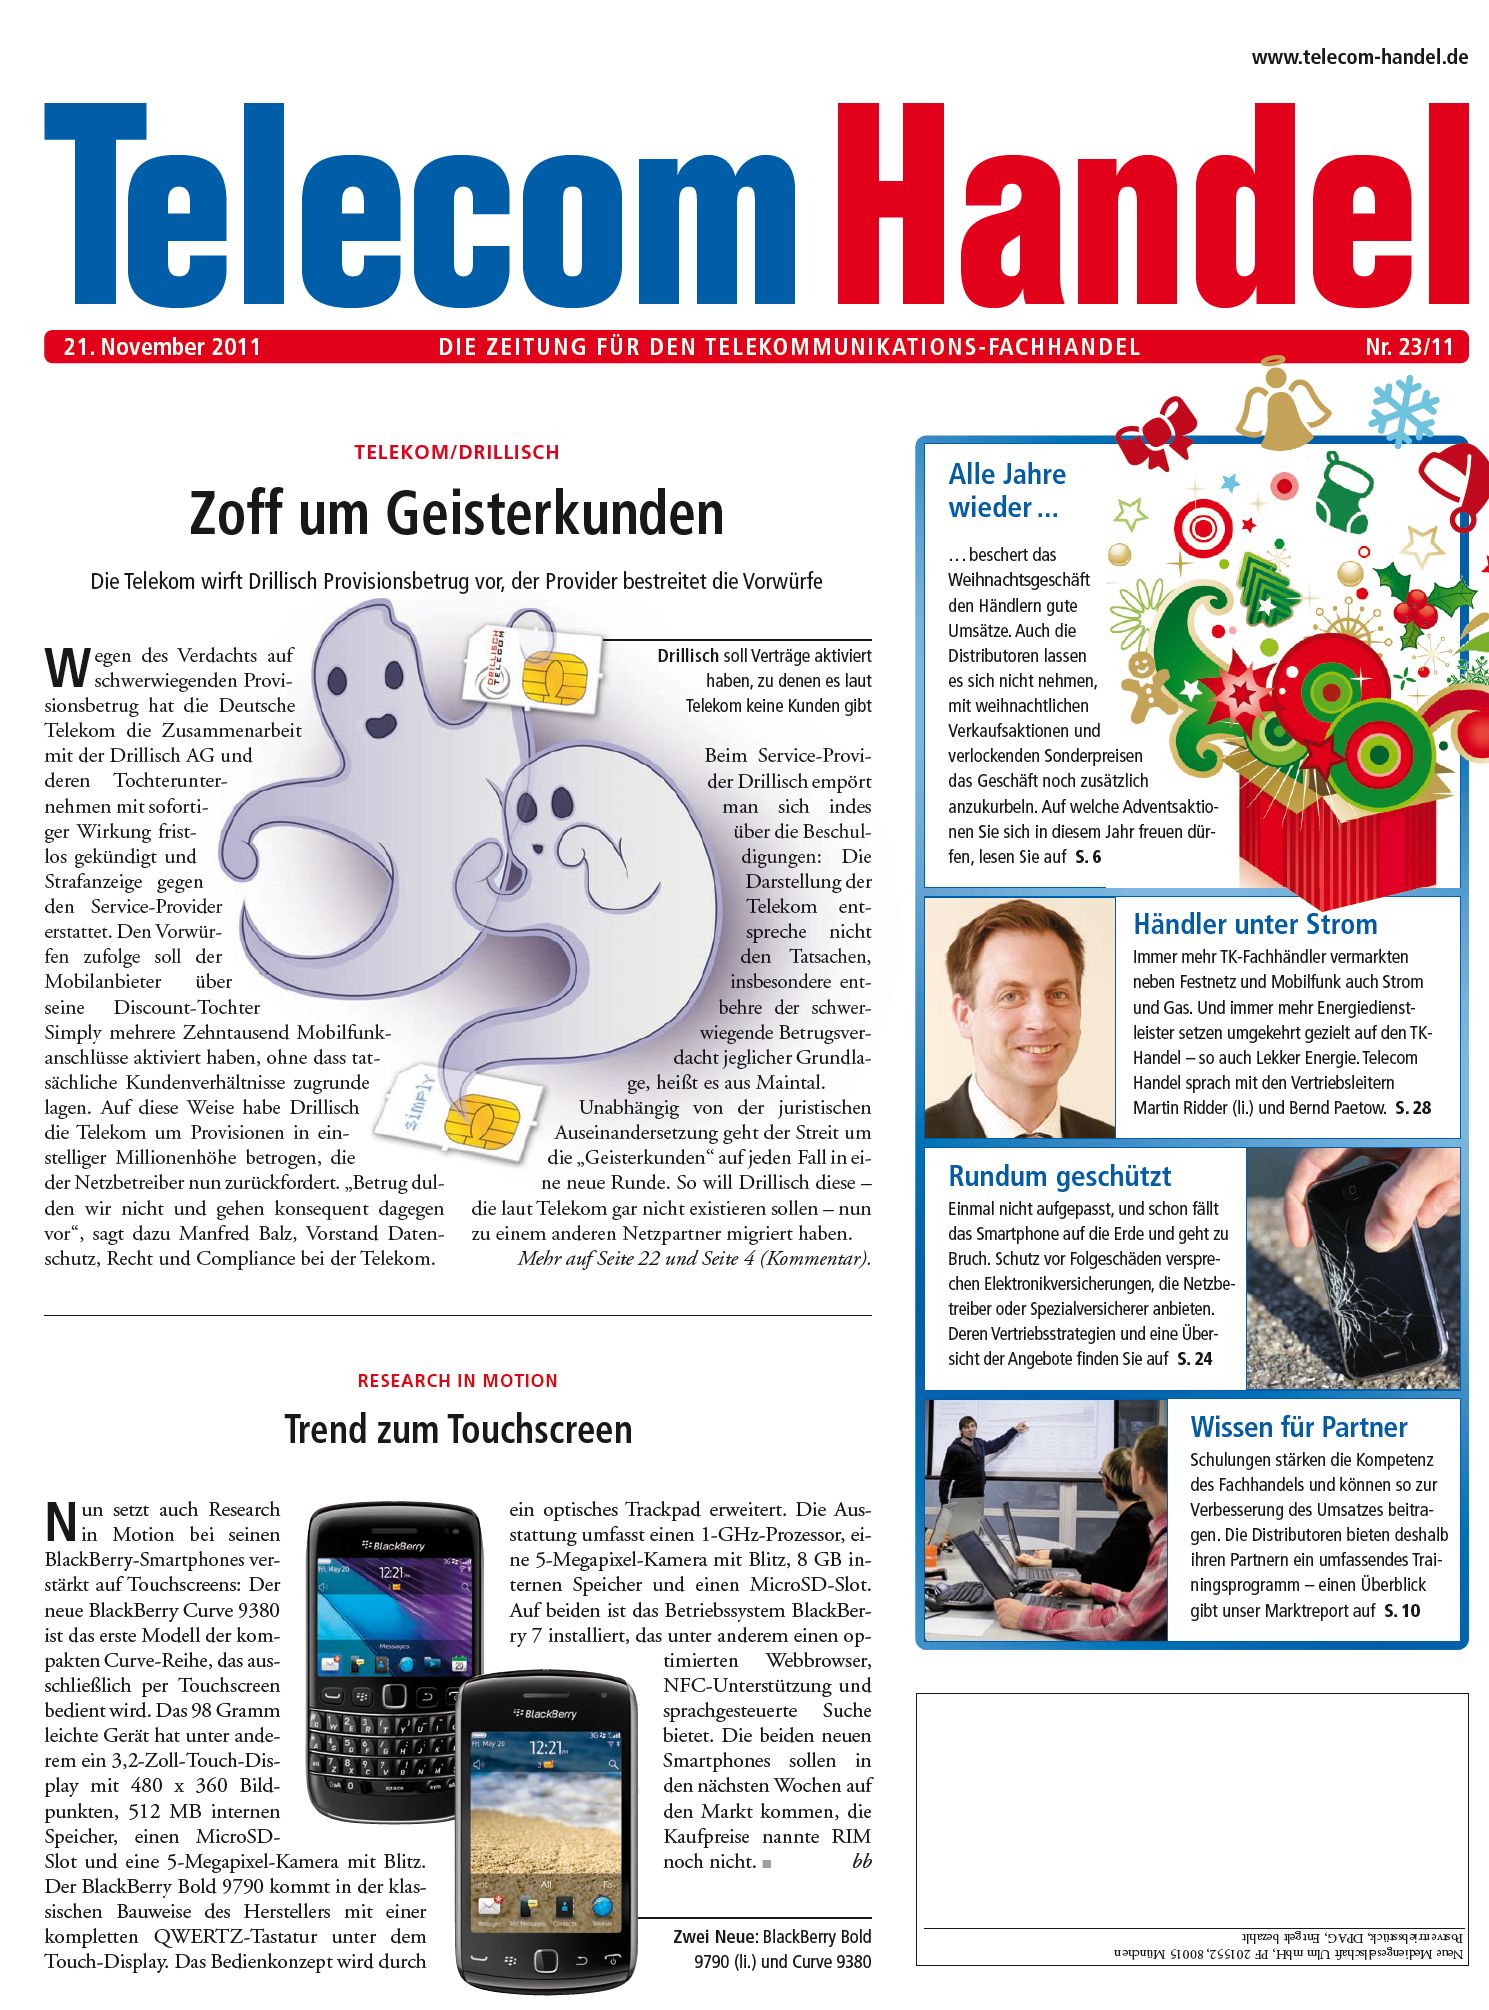 Telecom Handel Ausgabe 23/2011